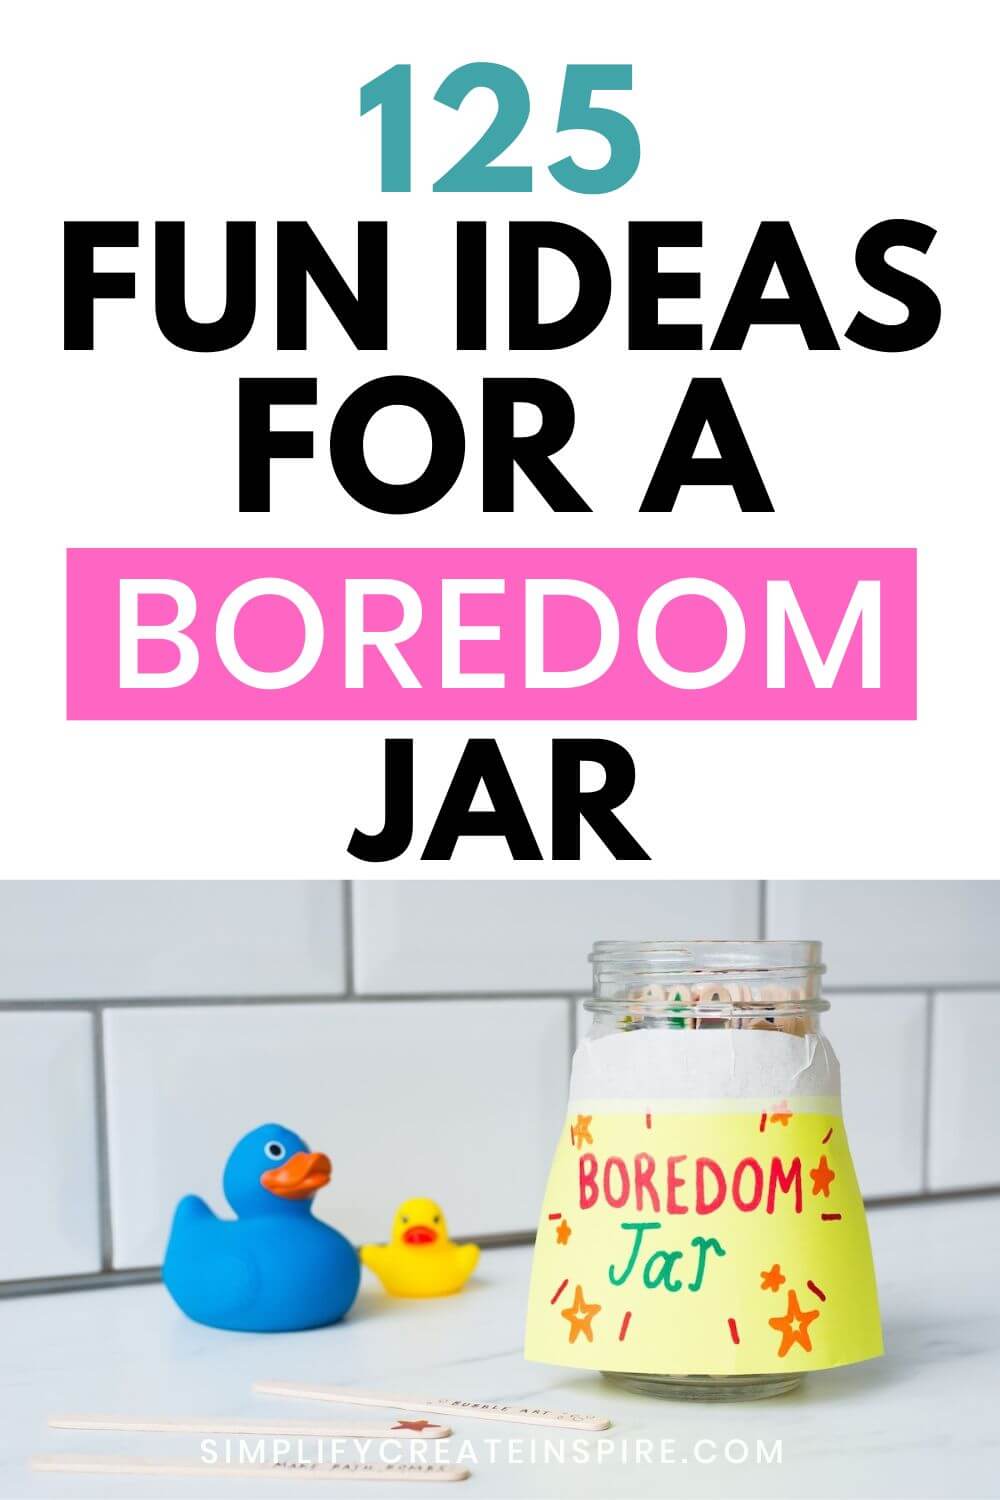 125 fun bored jar ideas for your activity jar